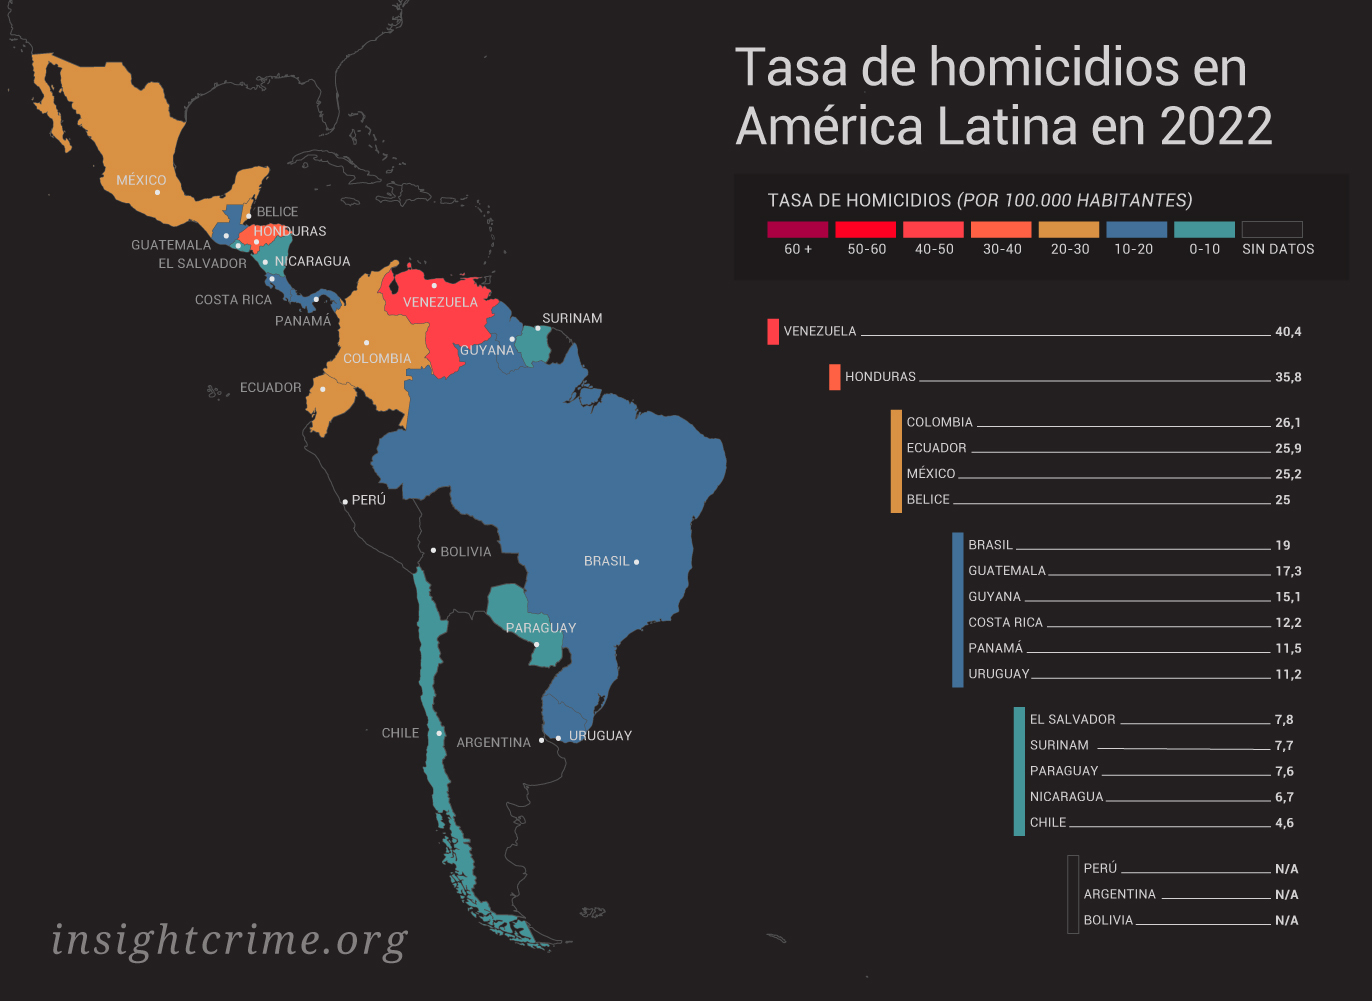 Este gráfico muestra la tasa de homicidios por cada 100.000 habitantes en los distintos países de las Américas.